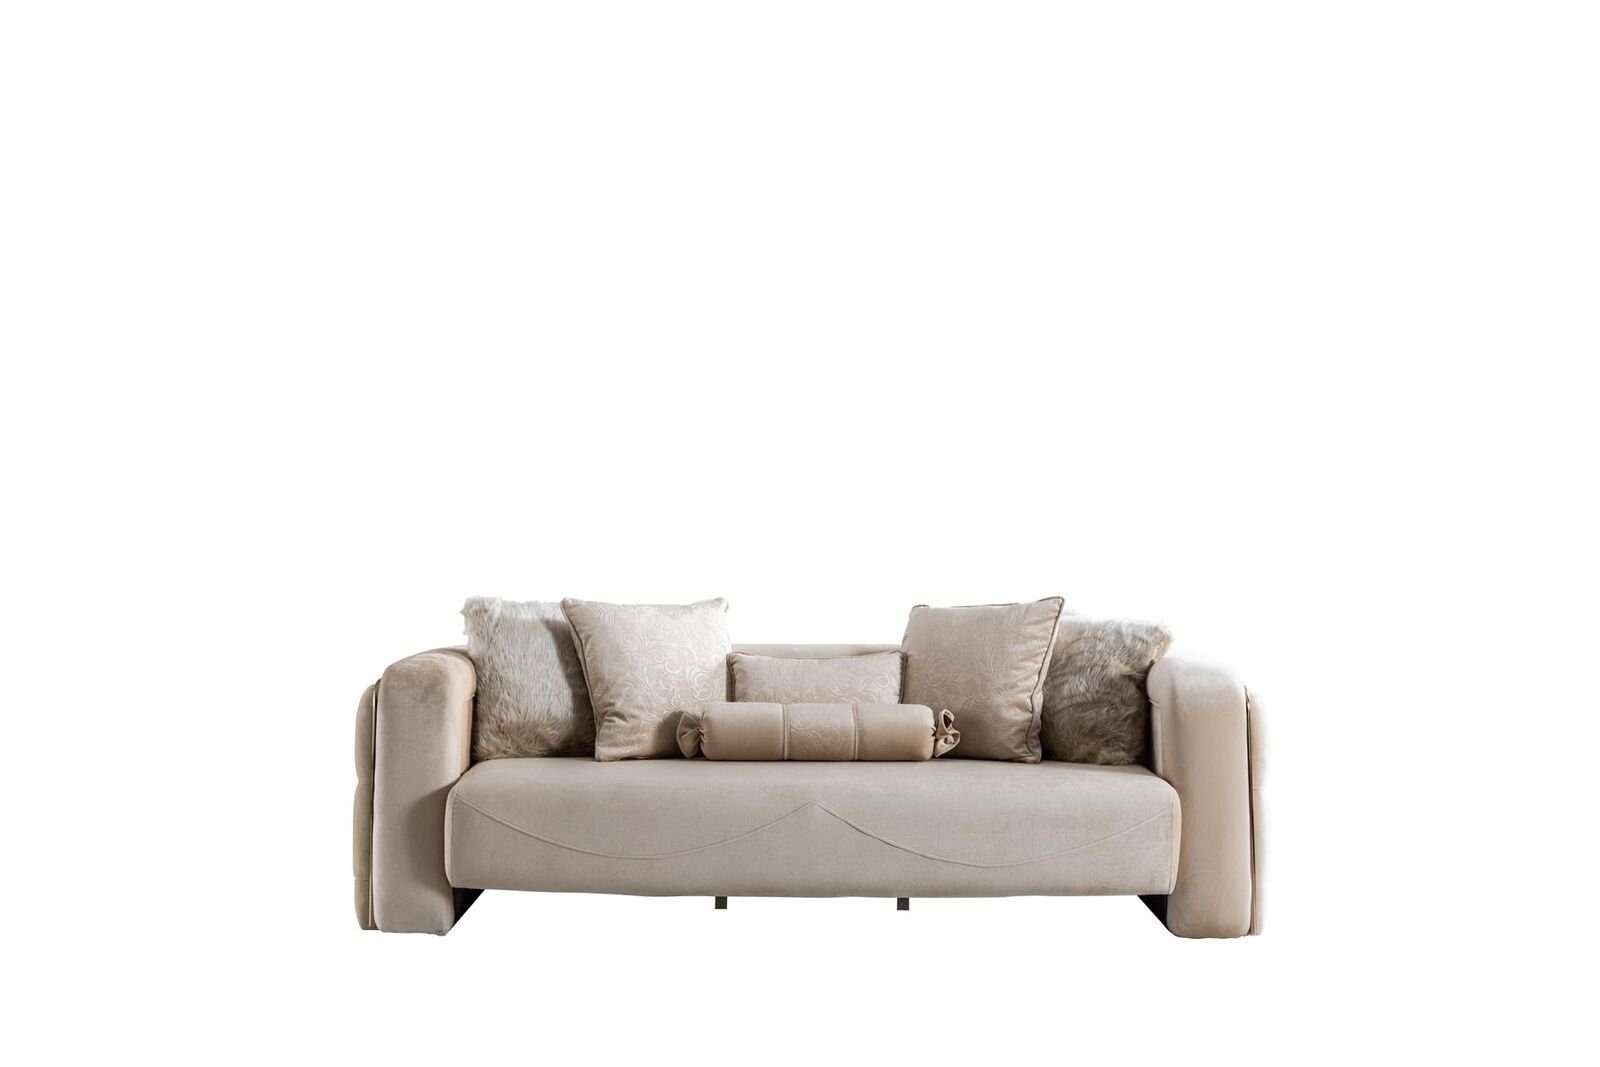 JVmoebel Sofa Sofa 3 Sitz Beige Möbel Wohnzimmer Chesterfield Polster Stoff Luxus, Made in Europe